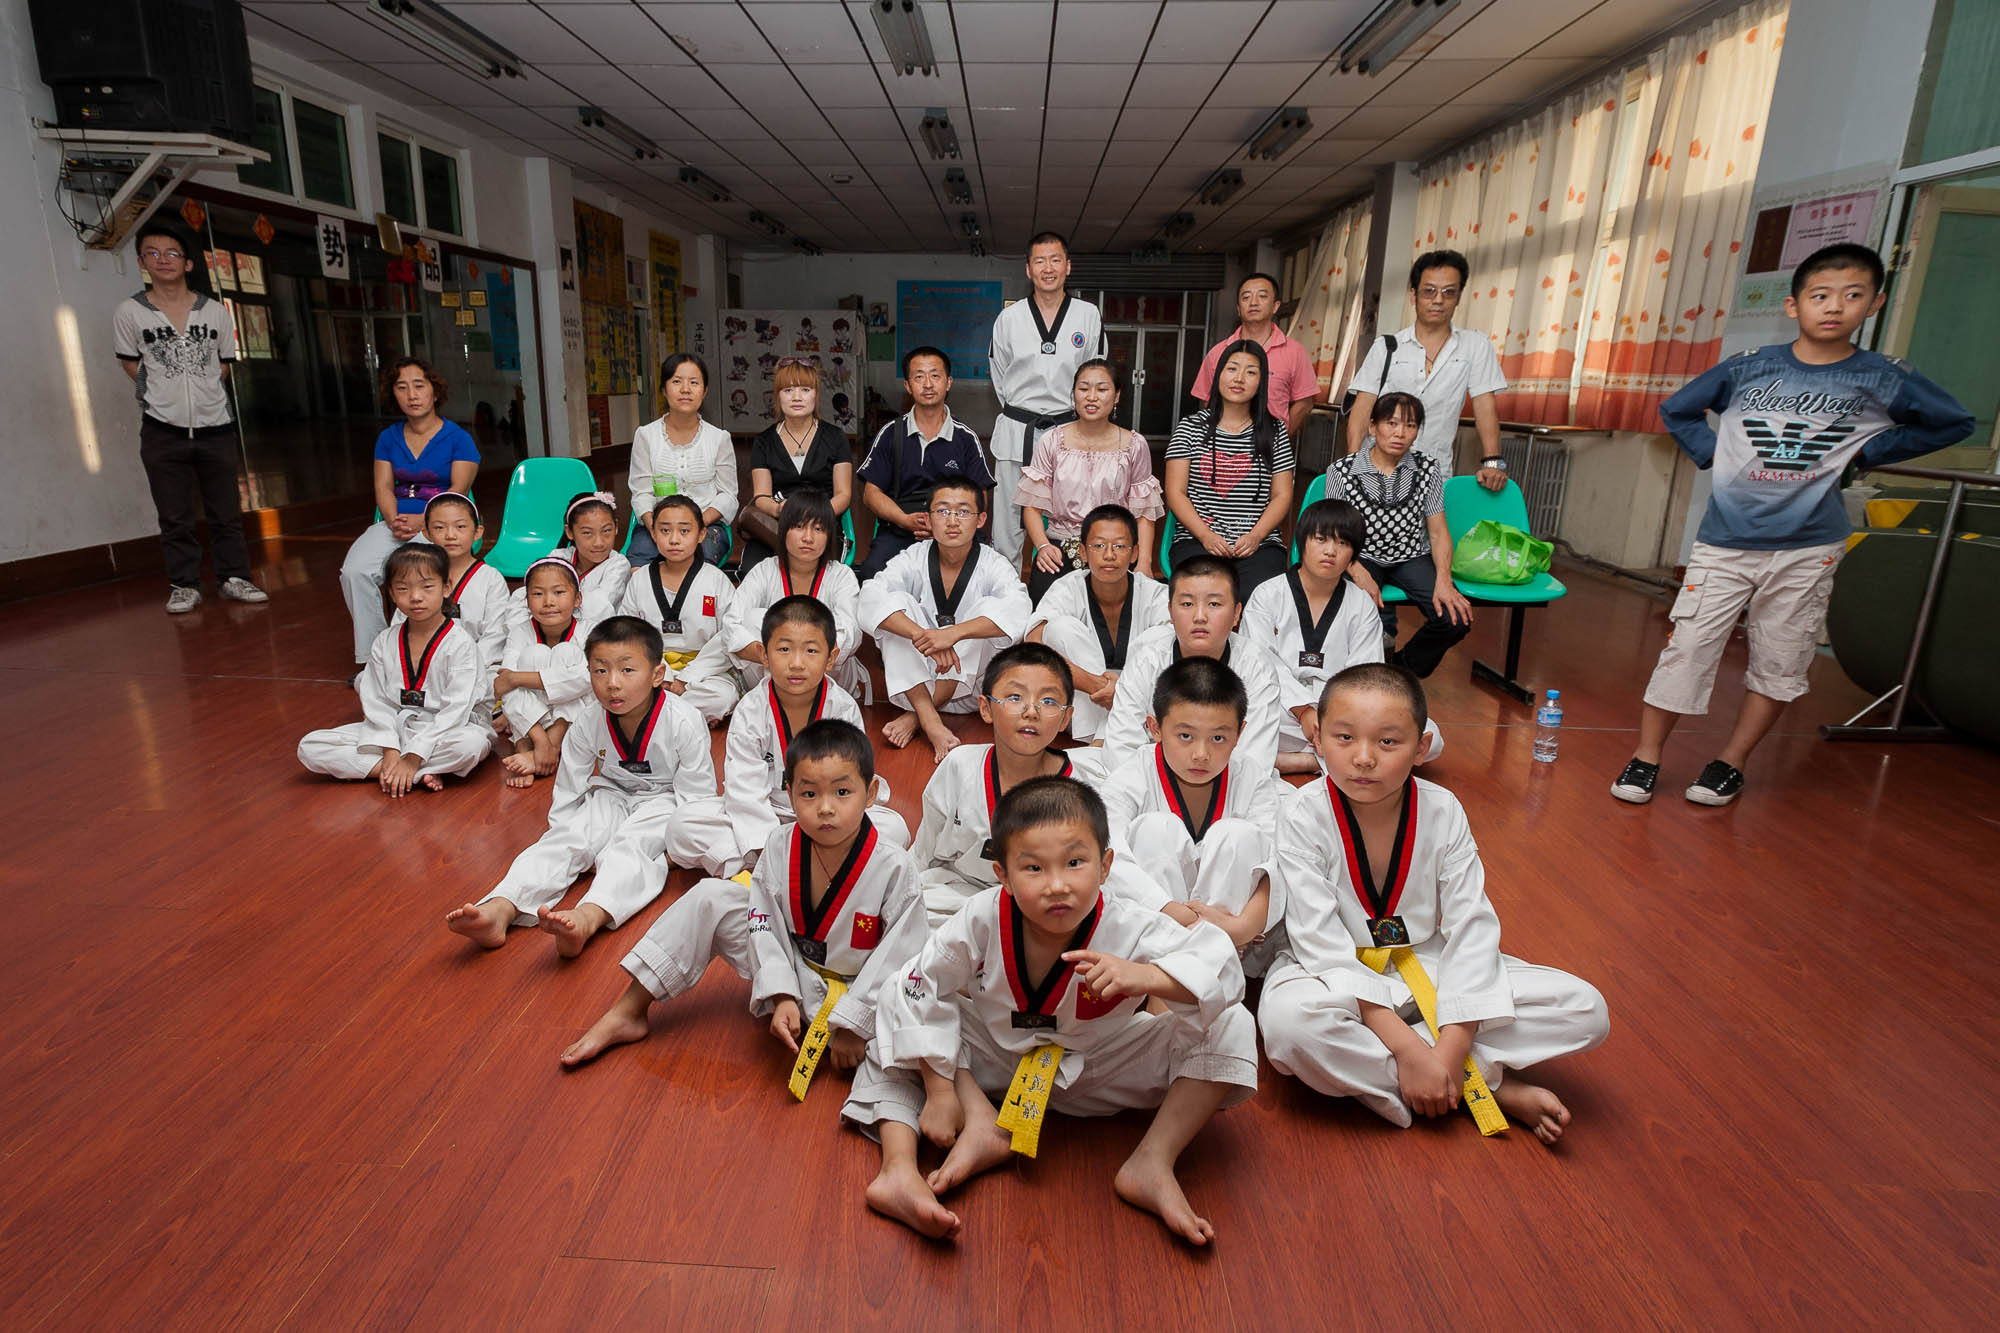 Zhu Hui's Taekwondo Club welcomed me